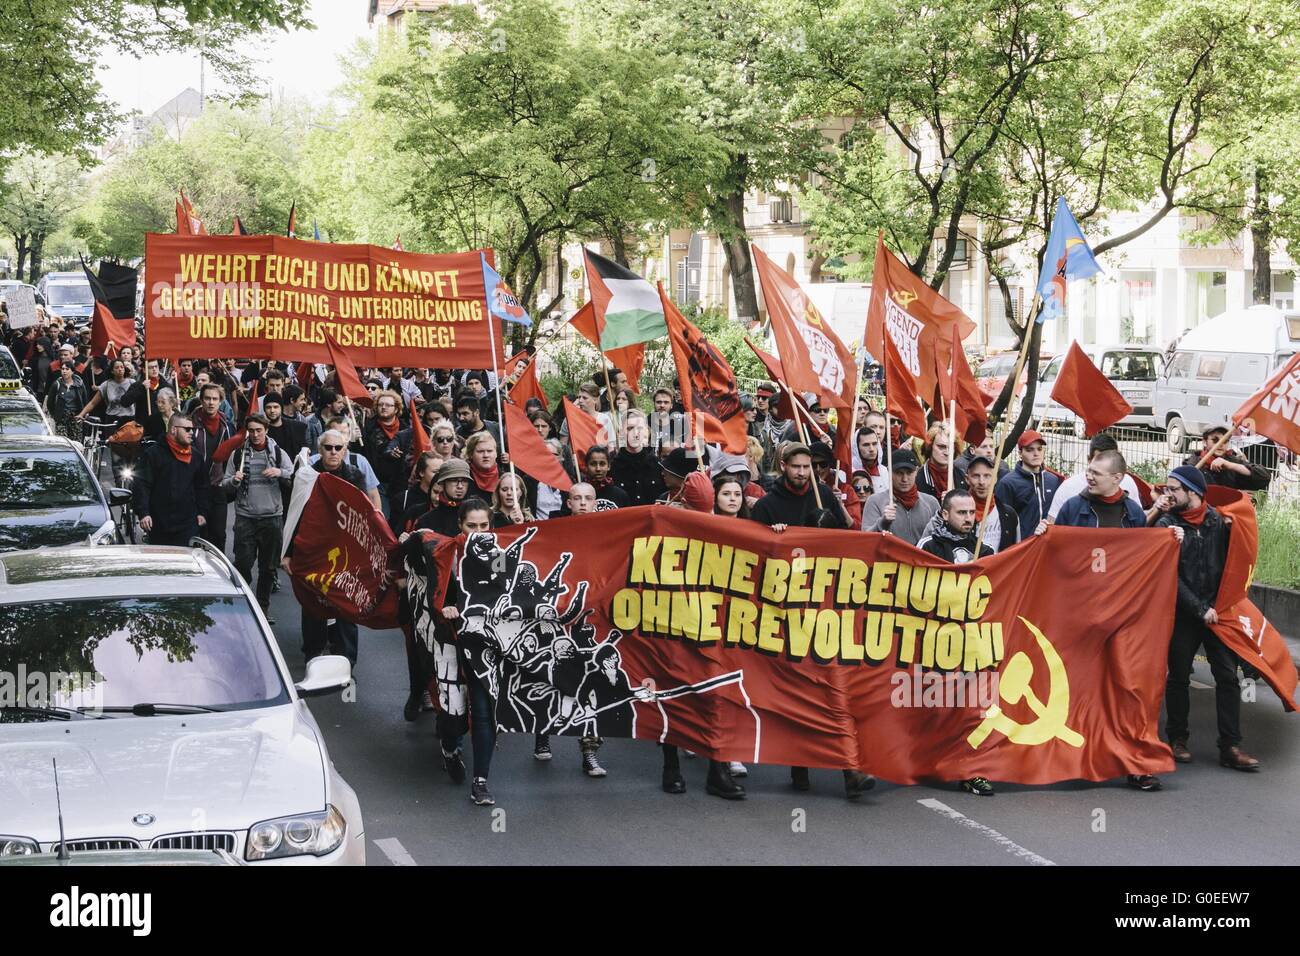 Berlin, Berlin, Allemagne. 1er mai 2016. Portesters au cours de la première des deux grandes manifestations à Berlin, les quartiers de Kreuzberg et Neukölln le 1er mai s'est tenue sous la devise 'Keine Befreiung ohne révolution ! [Pas de libération sans révolution !]'. Le Rallye est organisé par l'extrême-gauche et des groupes de gauche. Socialistes et des groupes antifascistes ont été l'organisation de la soi-disant ''1er mai révolutionnaire'' de démonstration depuis 1987. © Jan Scheunert/ZUMA/Alamy Fil Live News Banque D'Images